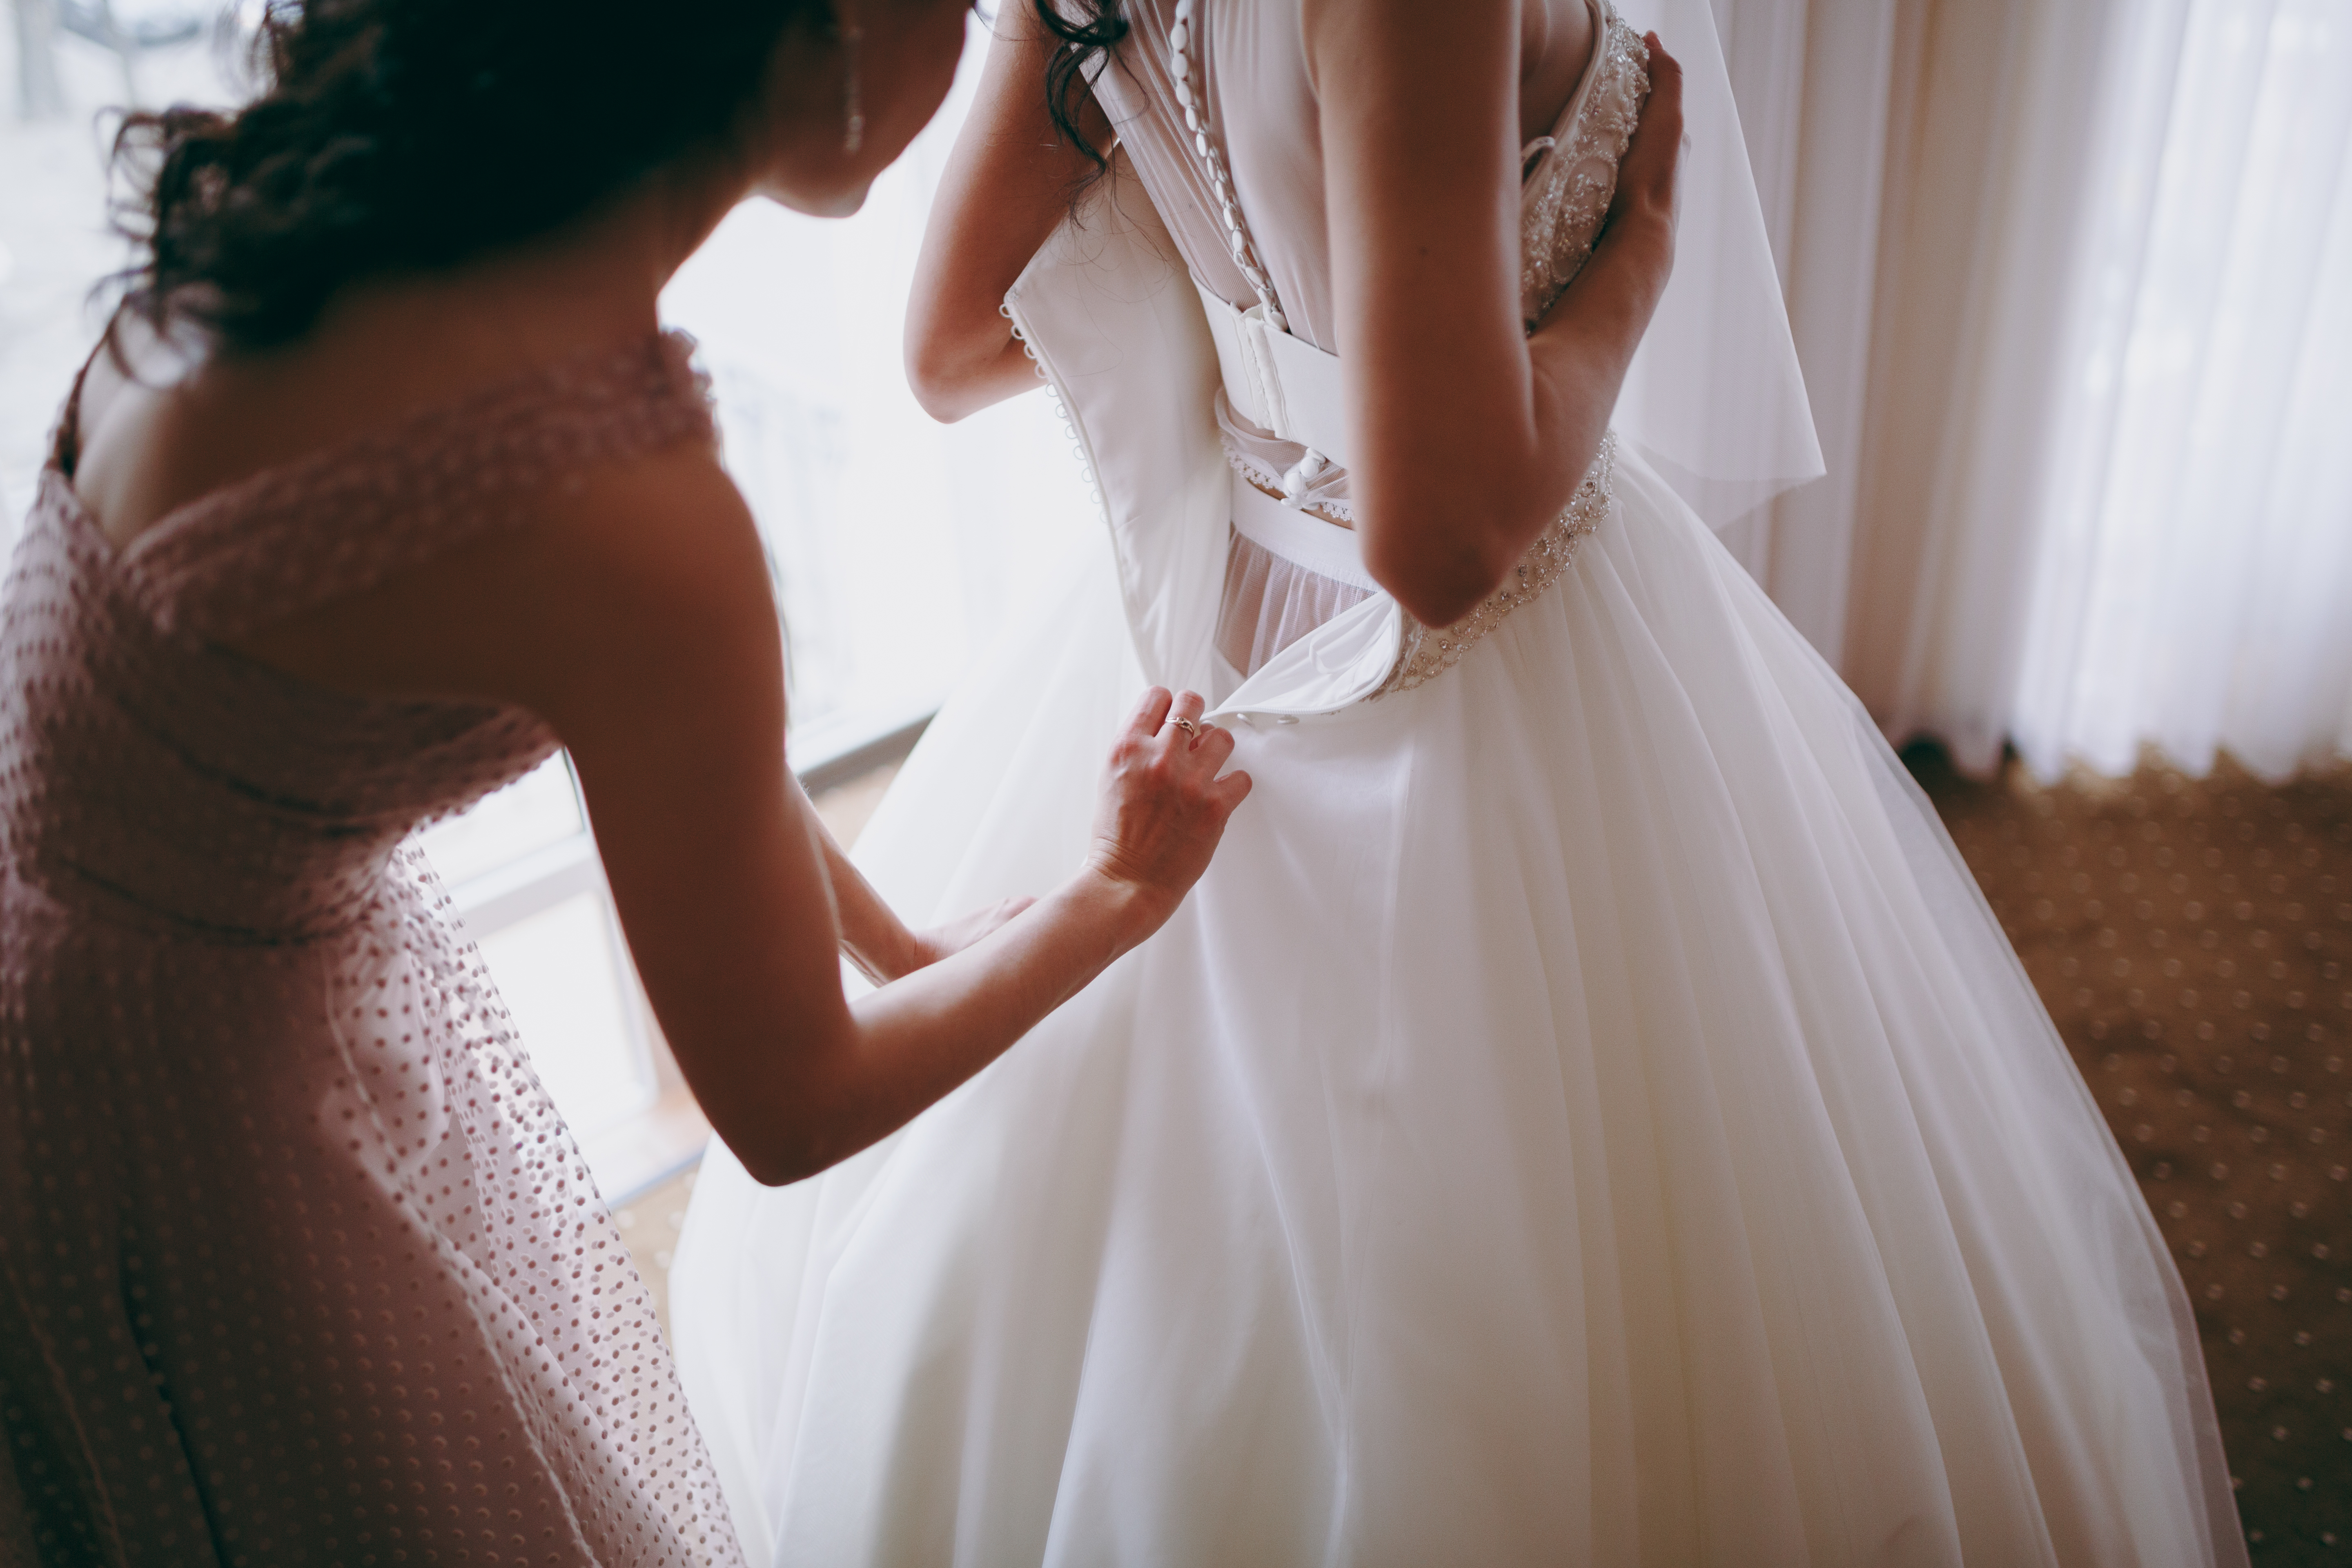 Eine Frau hilft einer Braut beim Anziehen ihres Brautkleides | Quelle: Shutterstock